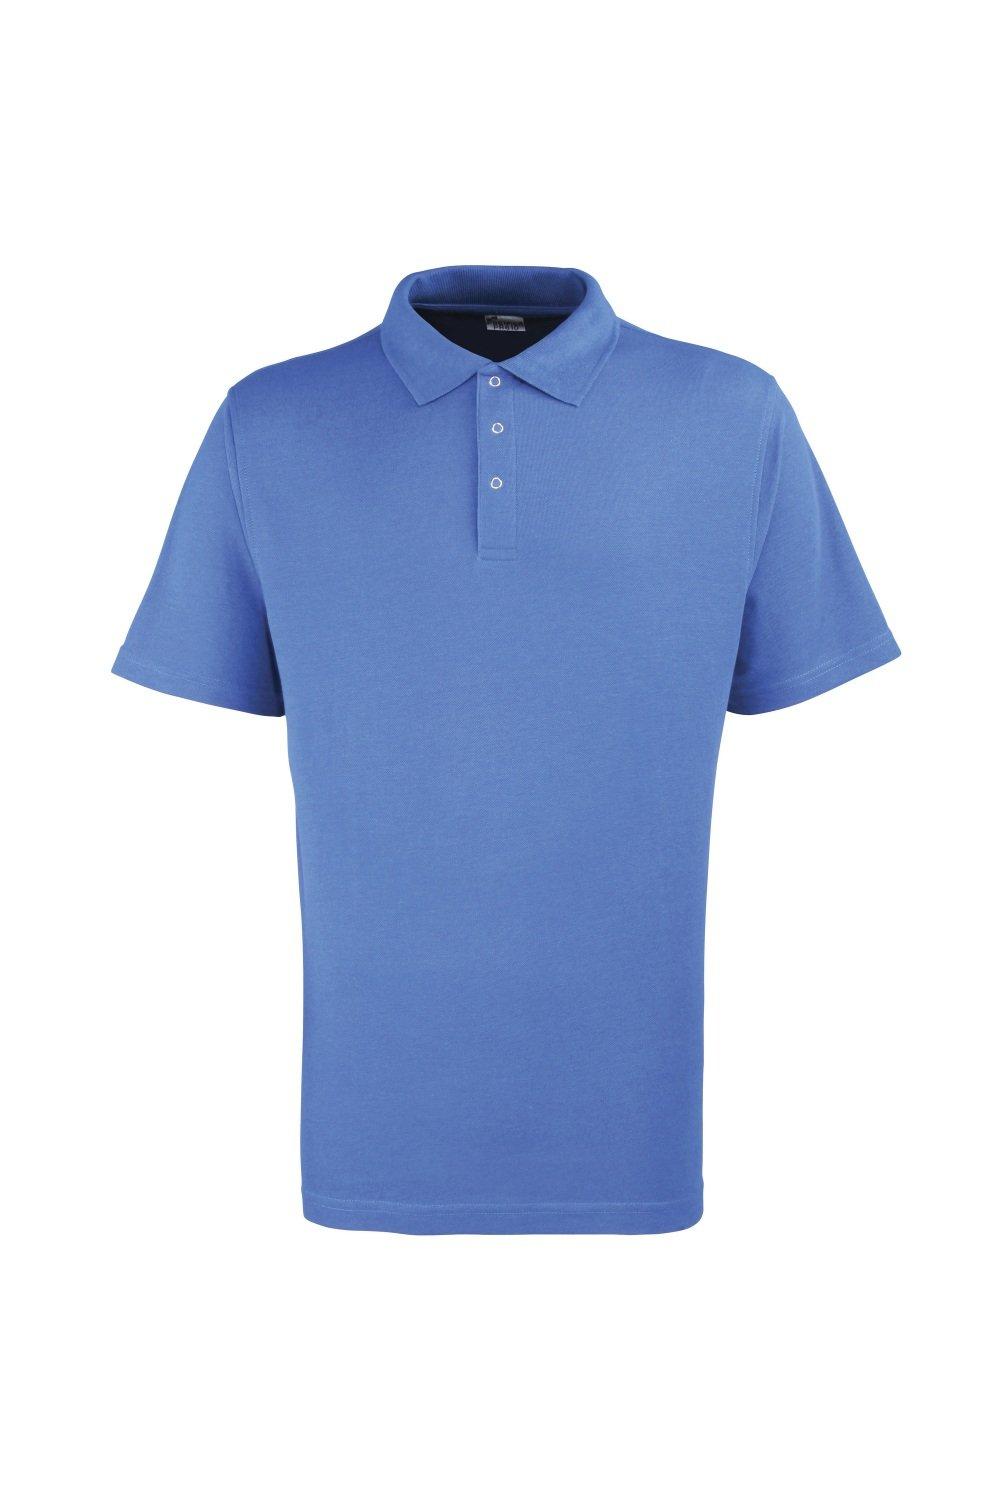 Однотонная рубашка-поло из тяжелого пике с заклепками Premier, синий рубашка sol s размер xl красный